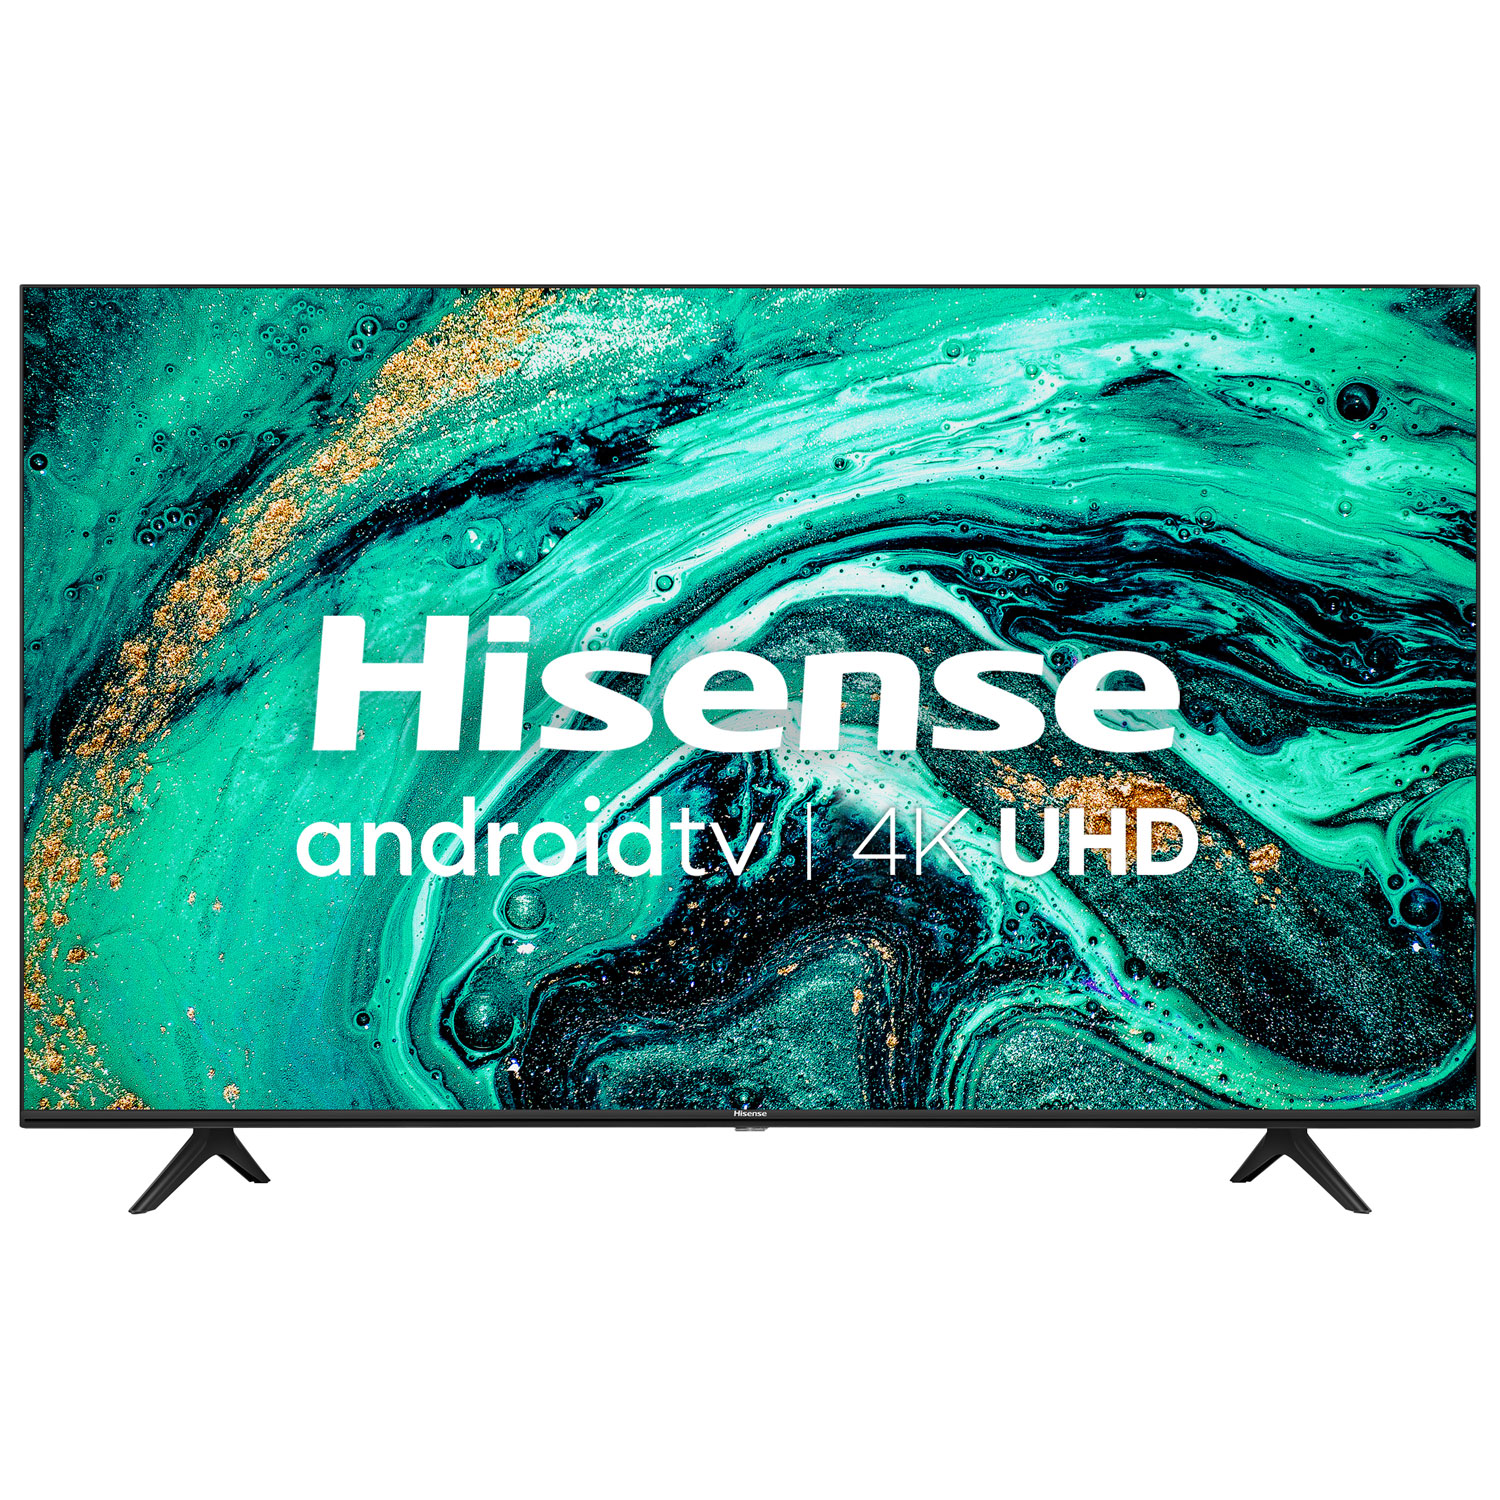 Hisense 70" 4K UHD HDR LED Android Smart TV (70H78G) - 2020